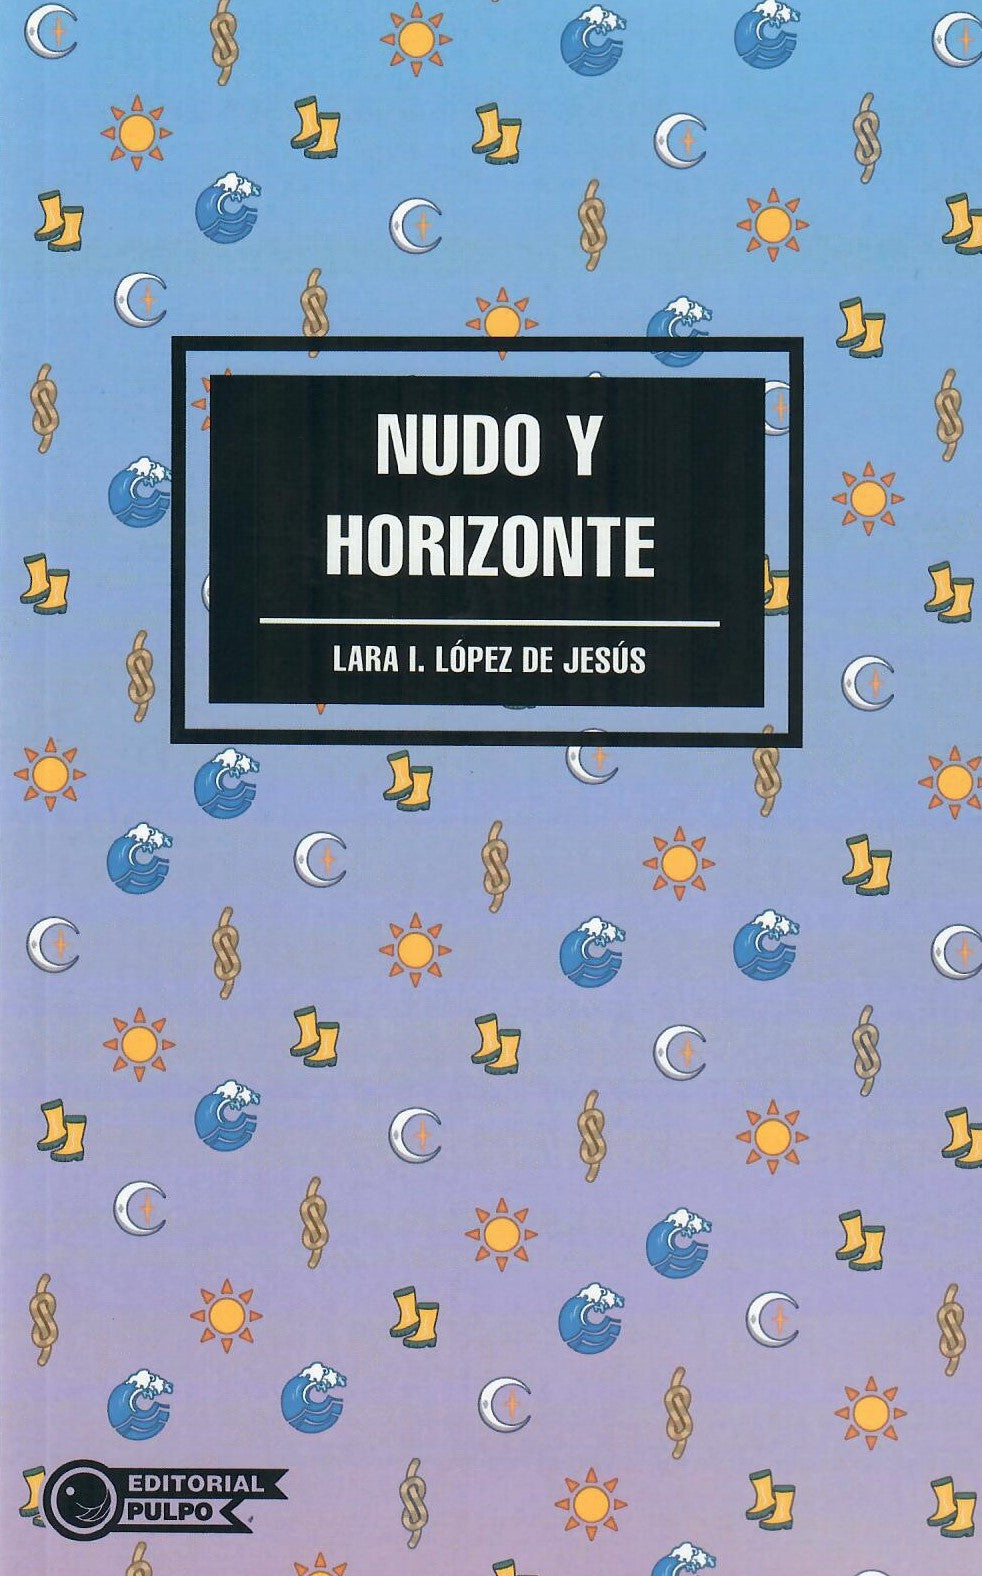 NUDO Y HORIZONTE - Lara I. López de Jesús